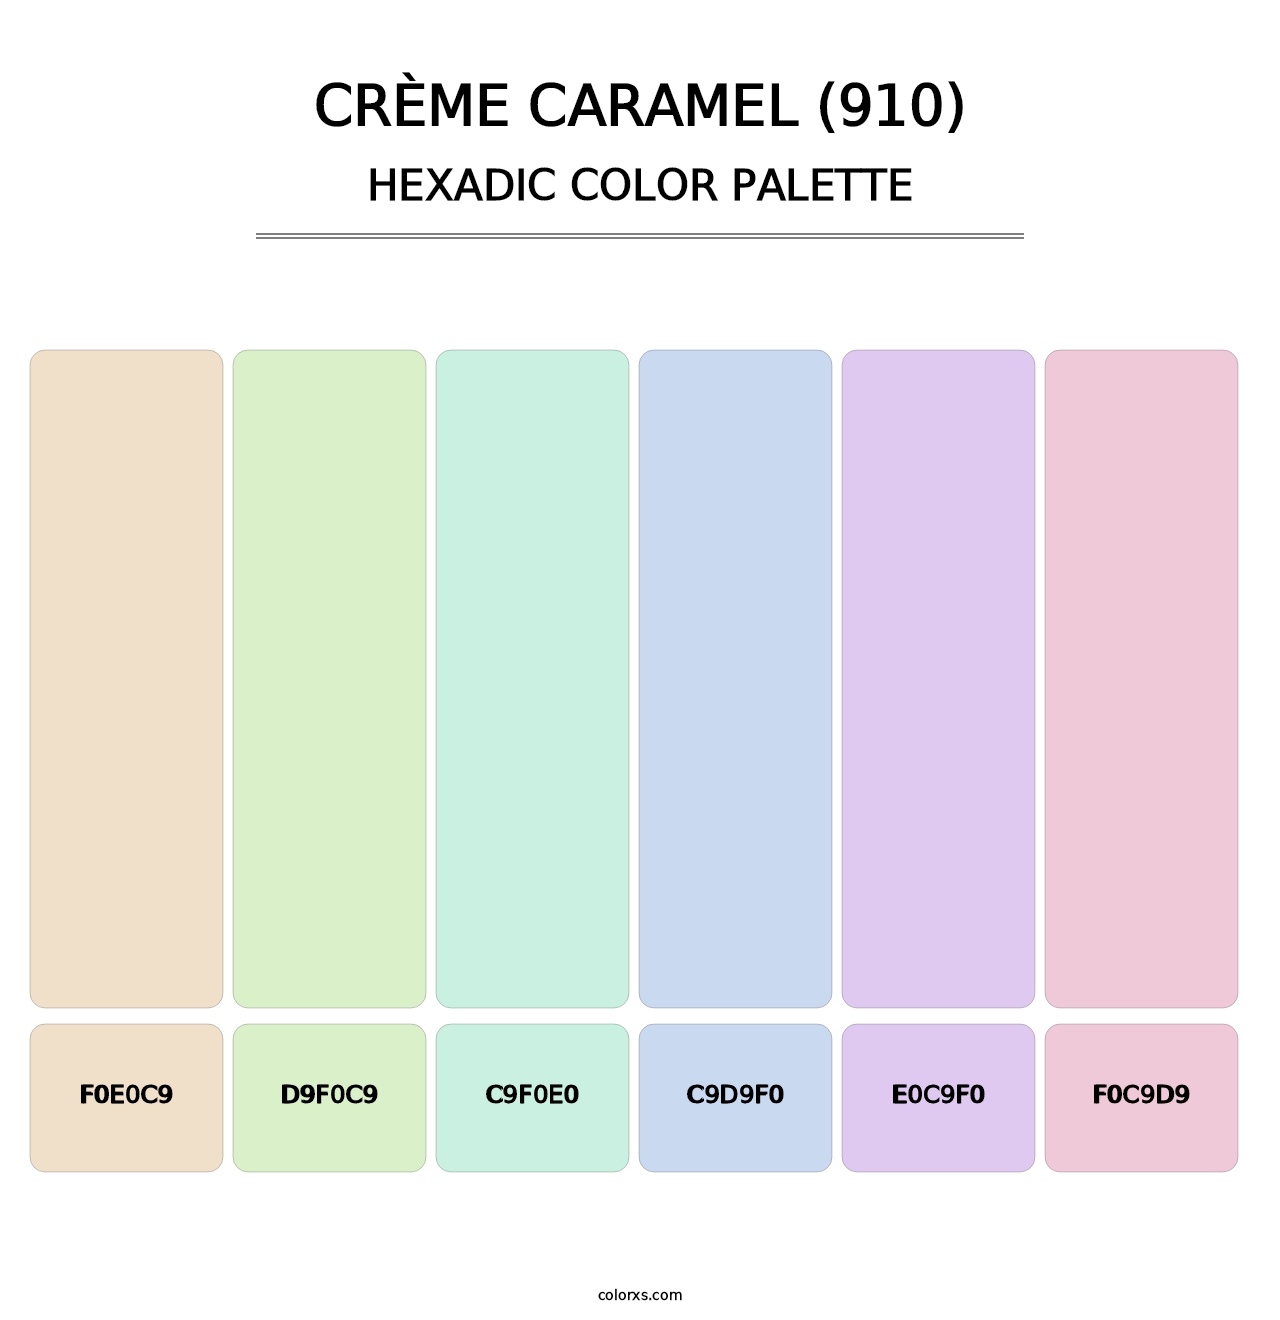 Crème Caramel (910) - Hexadic Color Palette